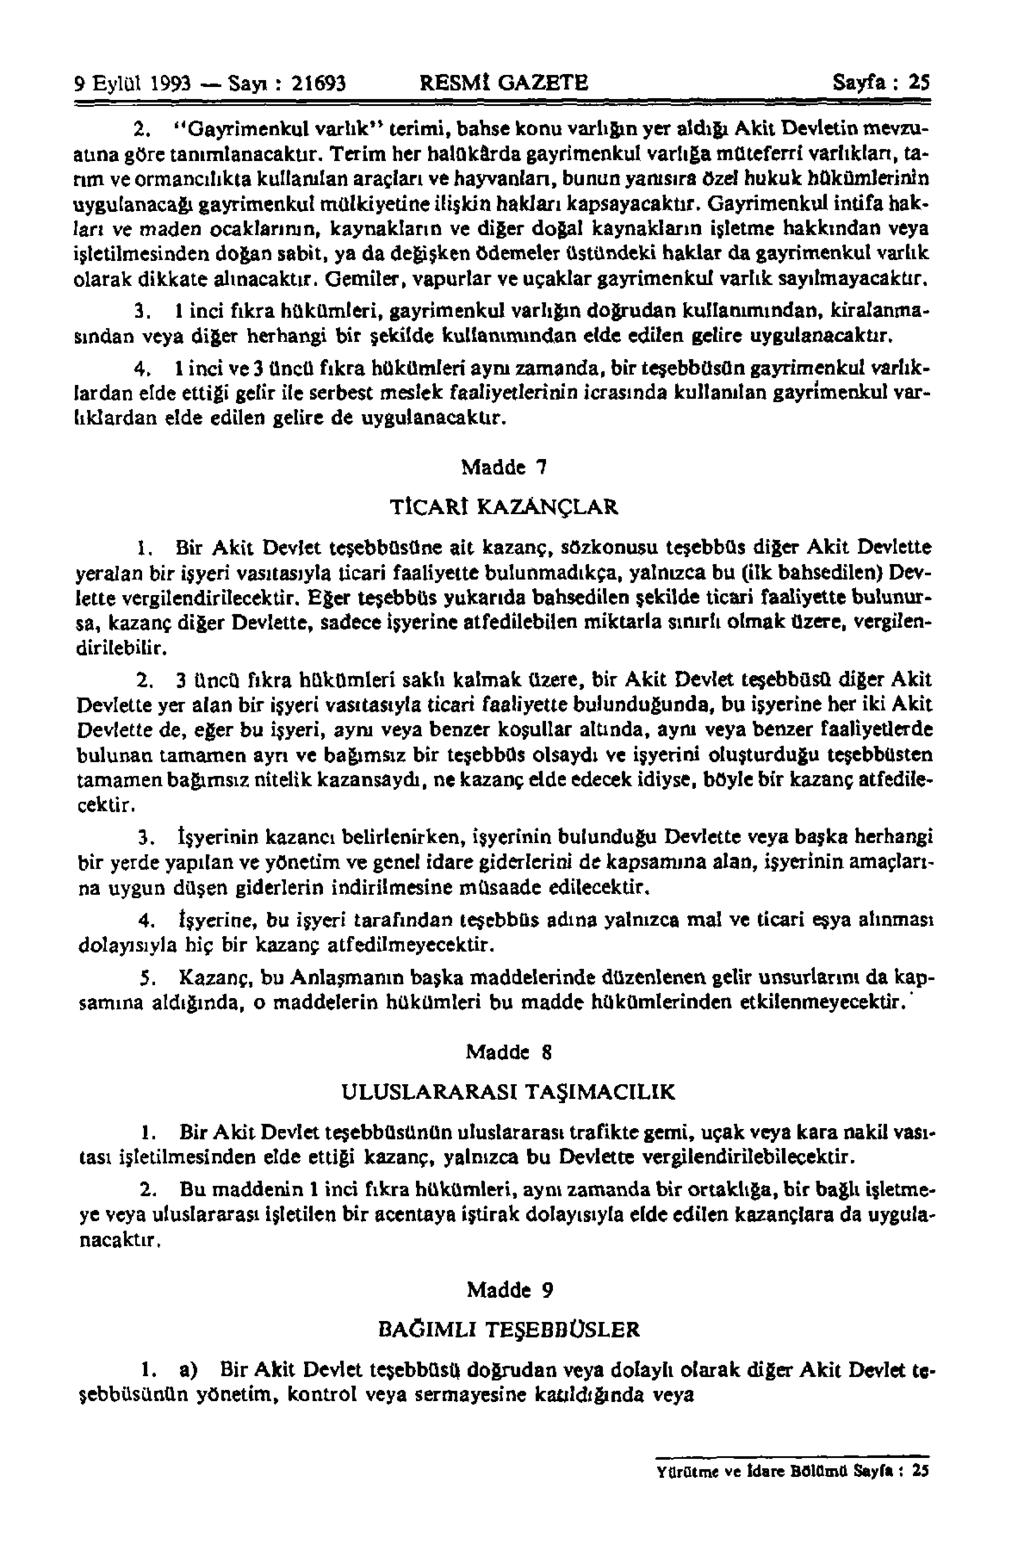 9 Eylül 1993 Sayı : 21693 RESMİ GAZETE Sayfa: 25 2. "Gayrimenkul varlık" terimi, bahse konu varlığın yer aldığı Akit Devletin mevzuatına göre tanımlanacaktır.